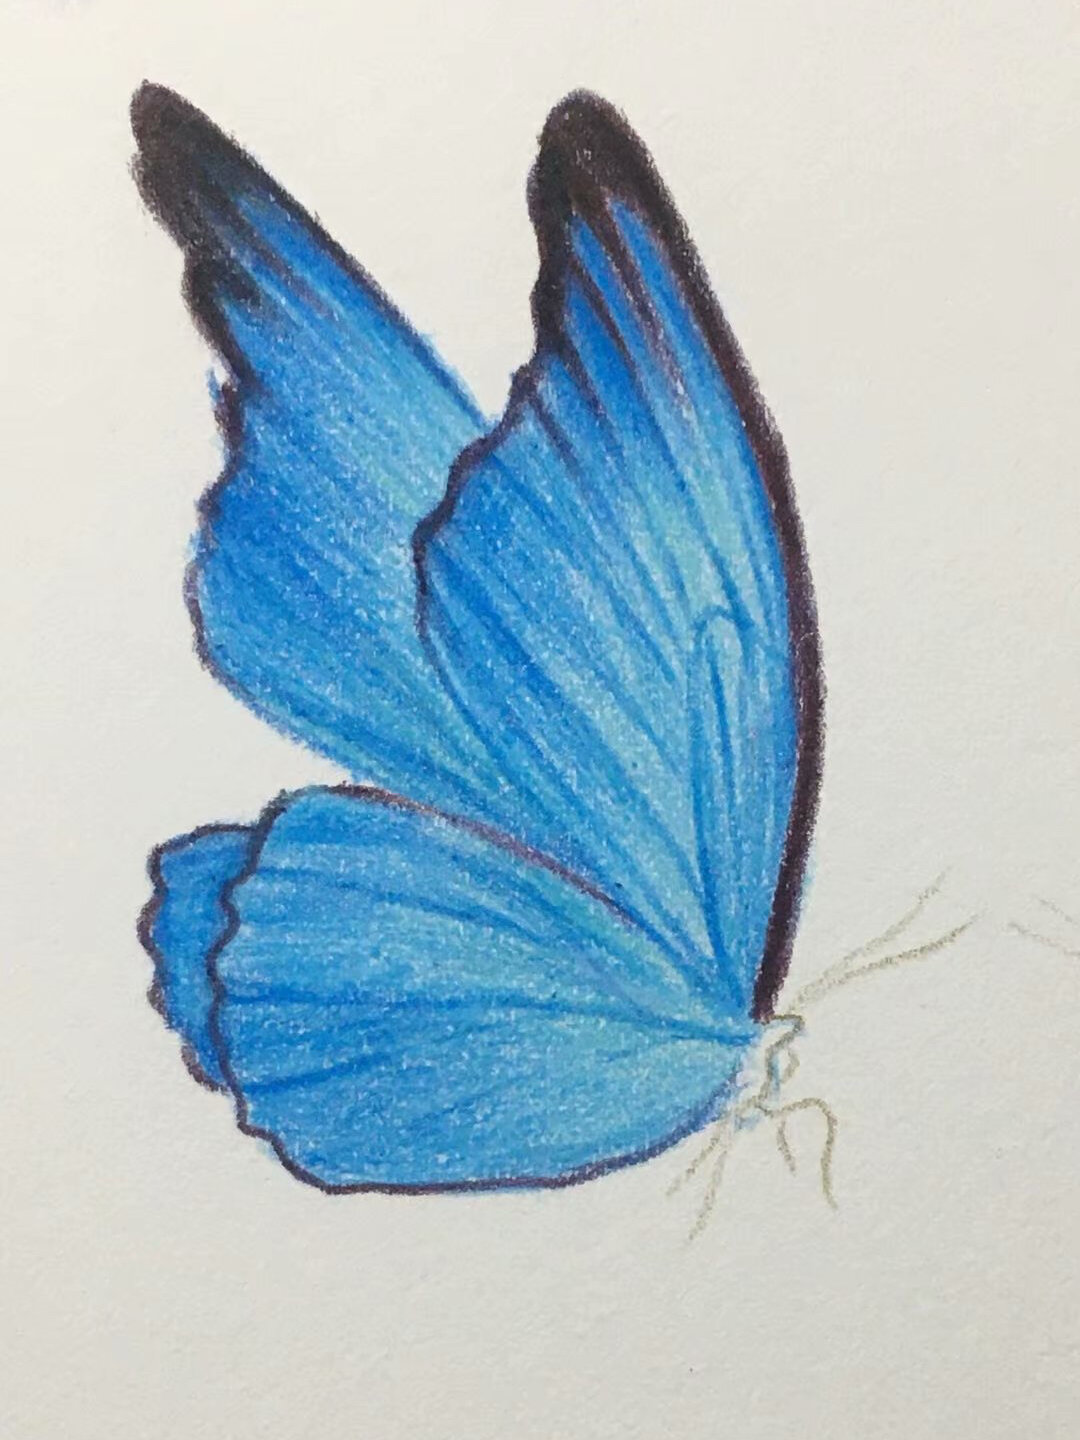 彩铅画简单又好看的蓝色蝴蝶03,含过程图哦